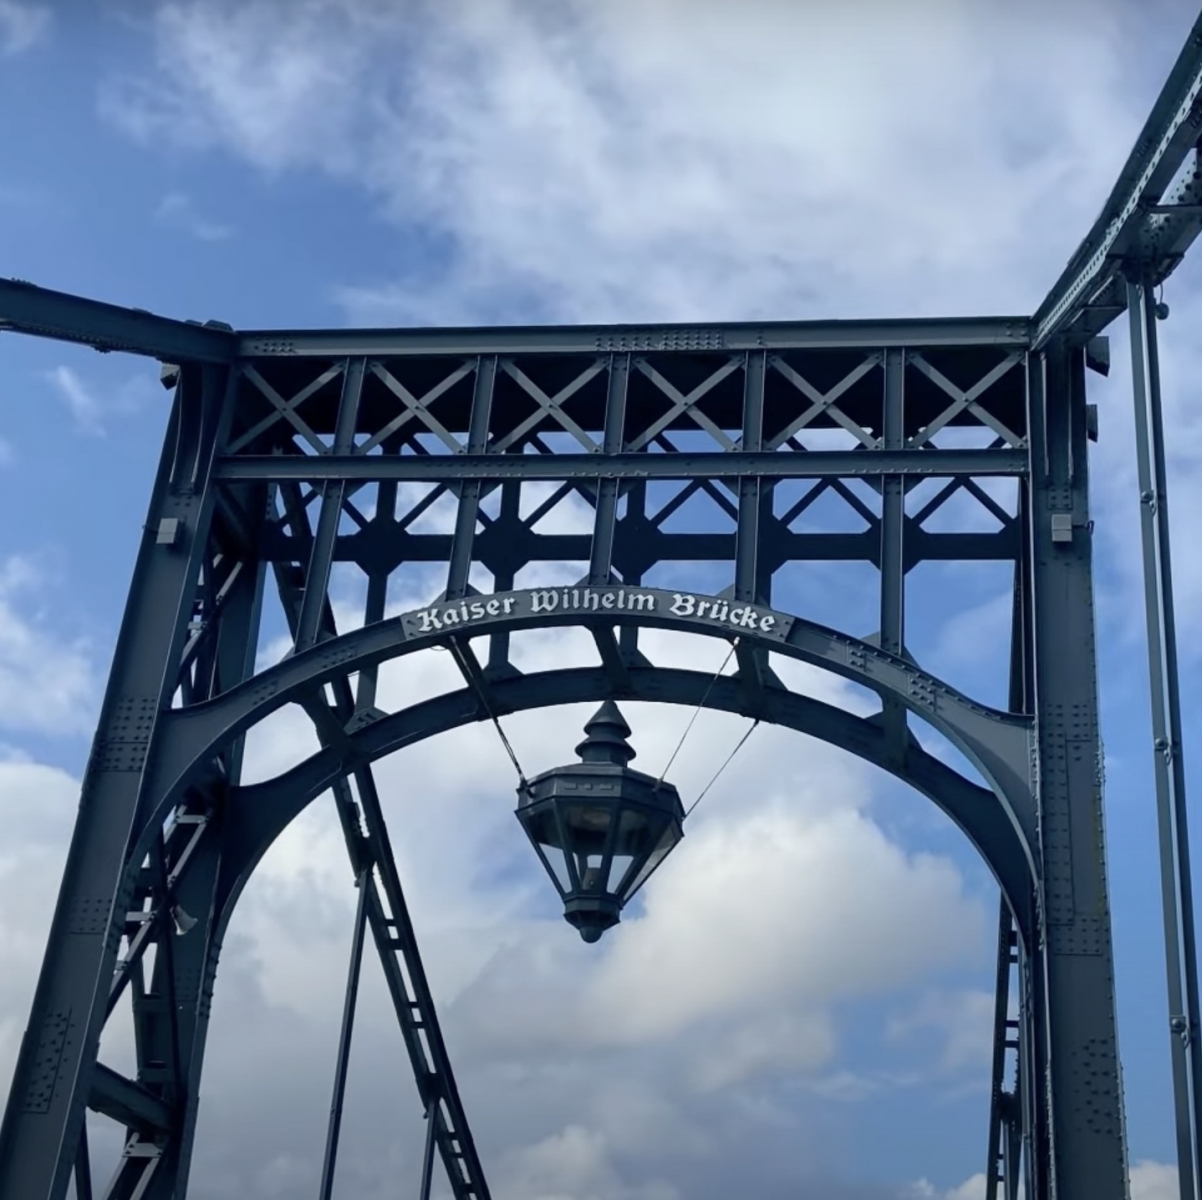 Decoración metálica del puente Kaiser Wilhelm